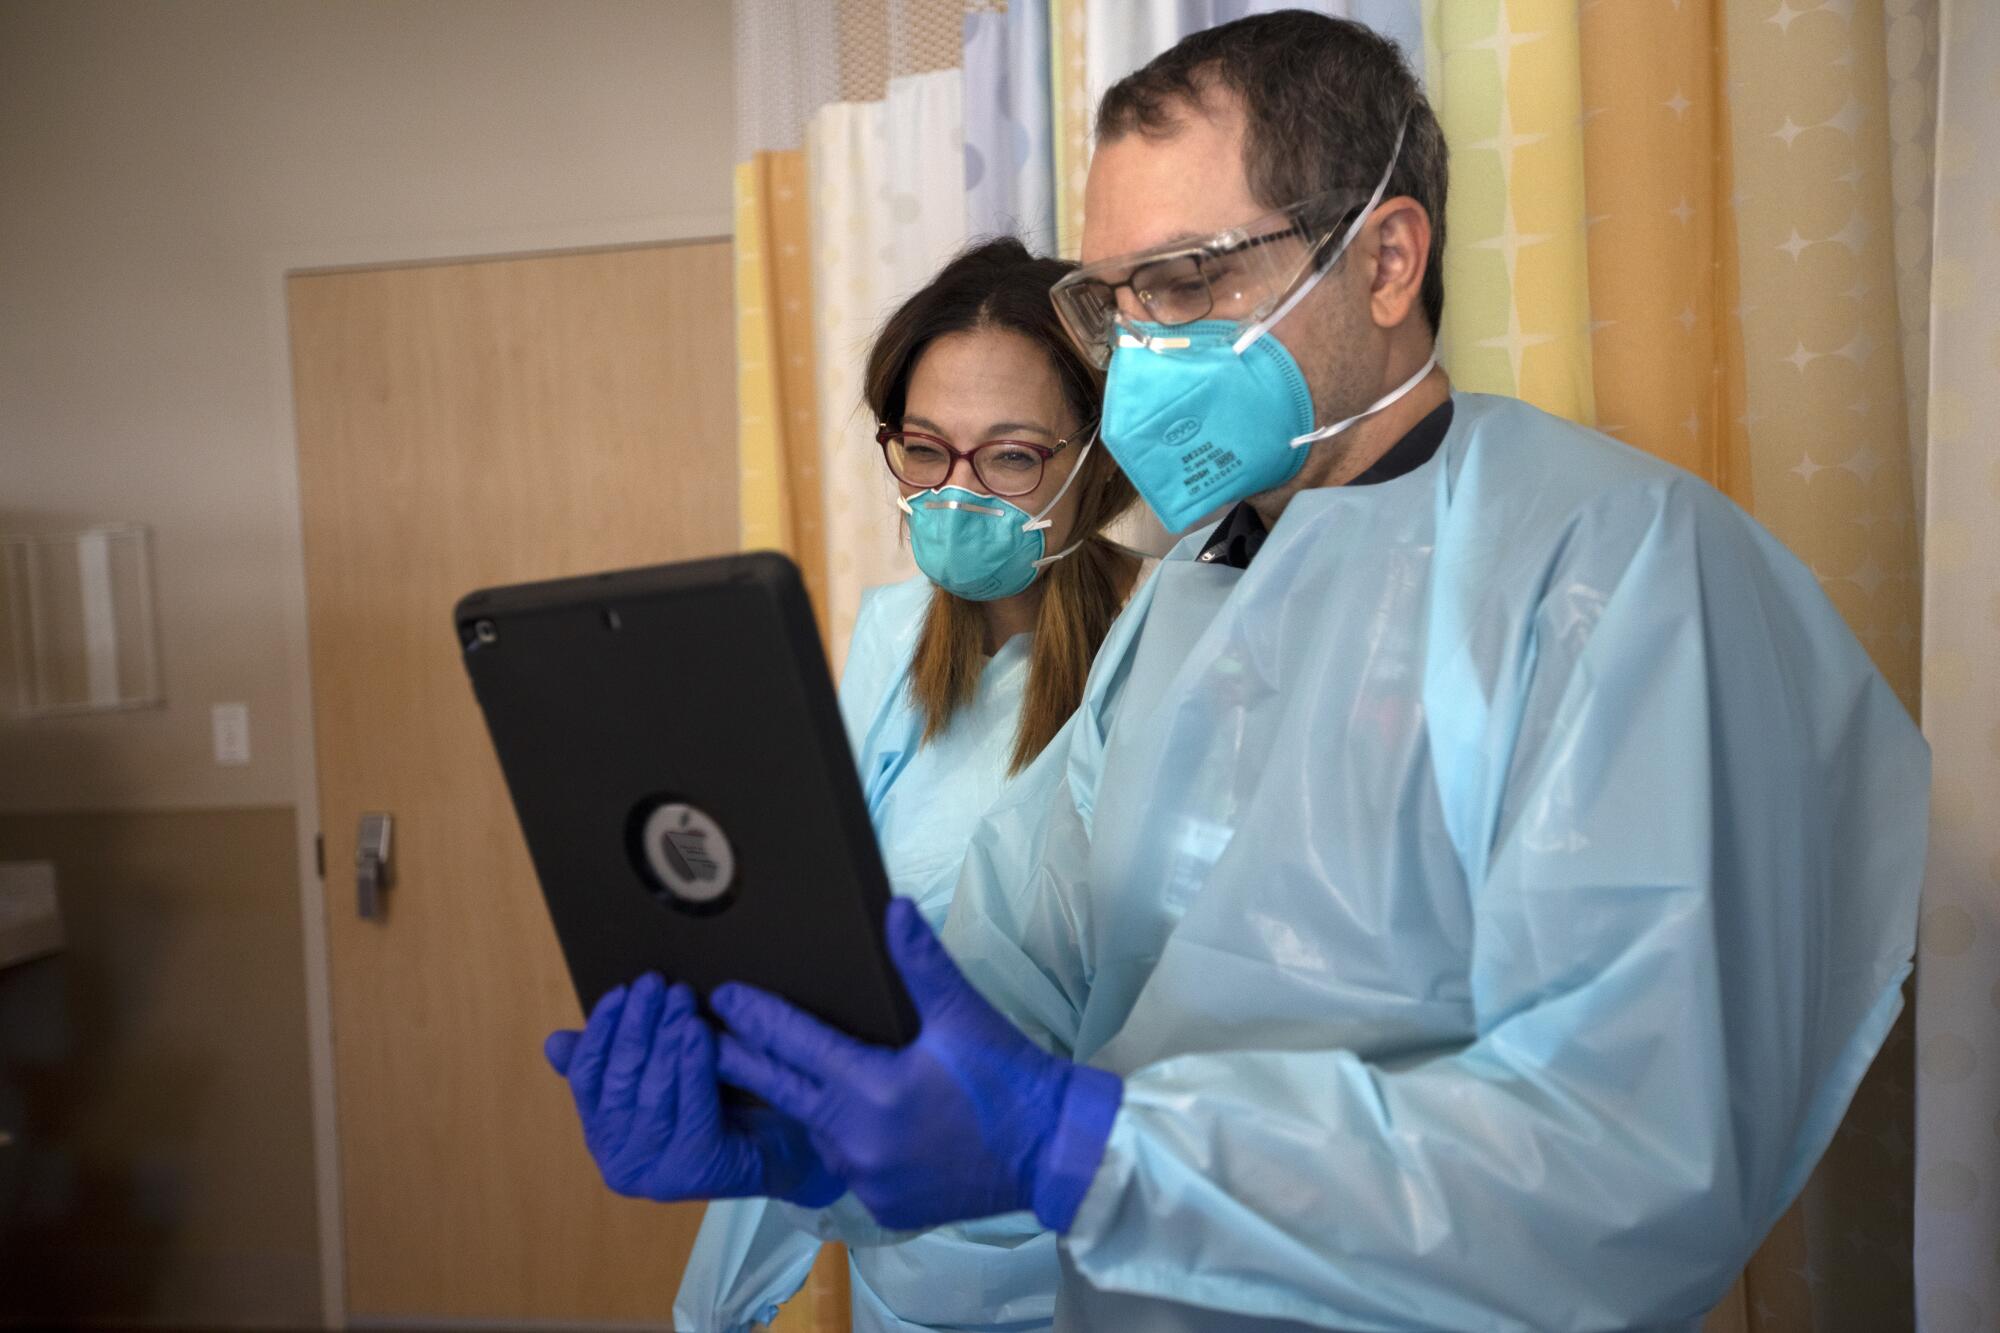 Dr. Marwa Kilani and Chaplain Kevin Deegan look at an iPad.